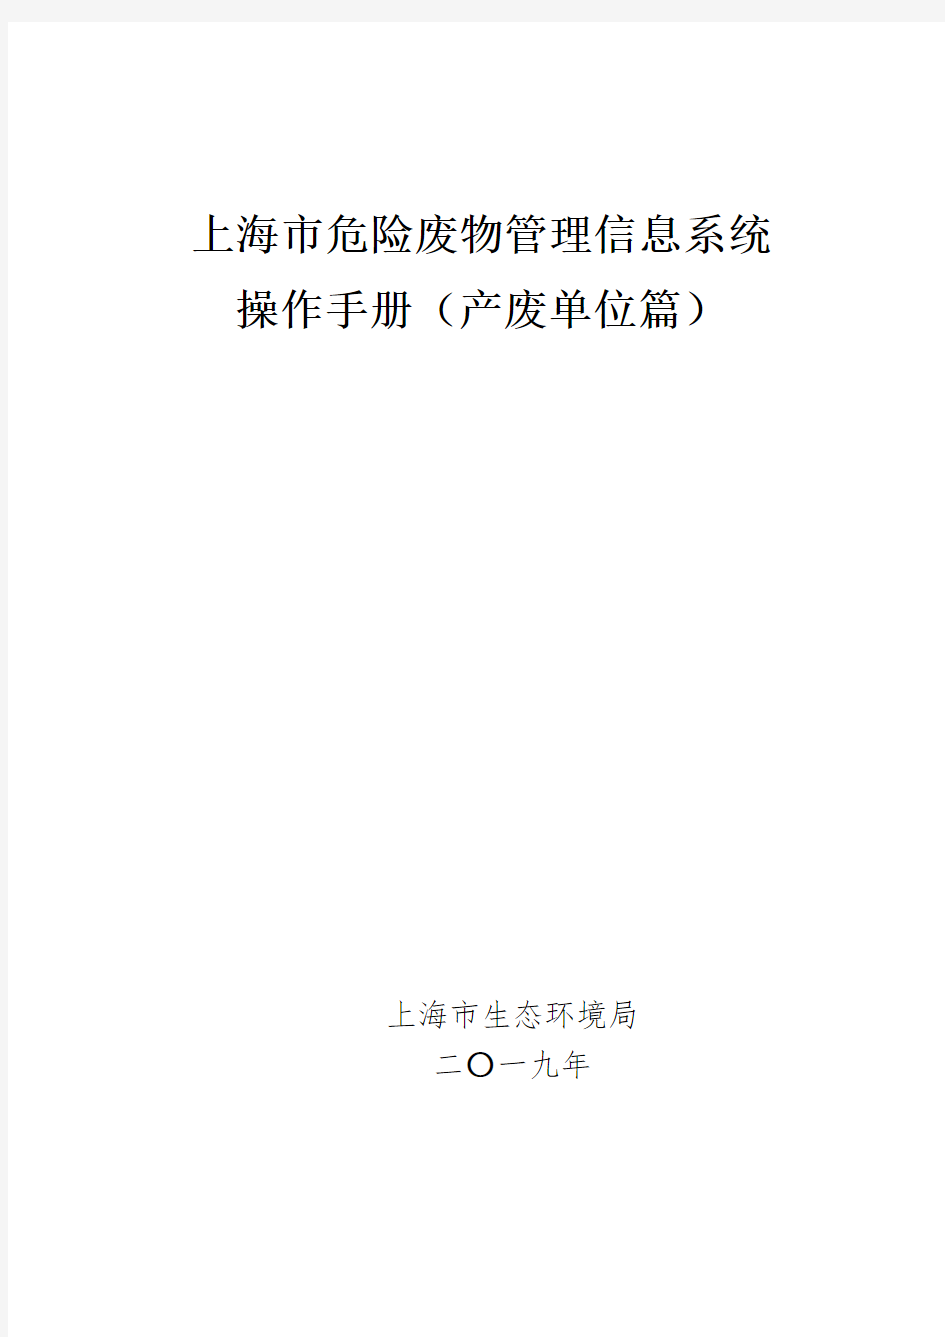 上海市危险废物管理信息系统操作手册(产生单位)2019年度公布